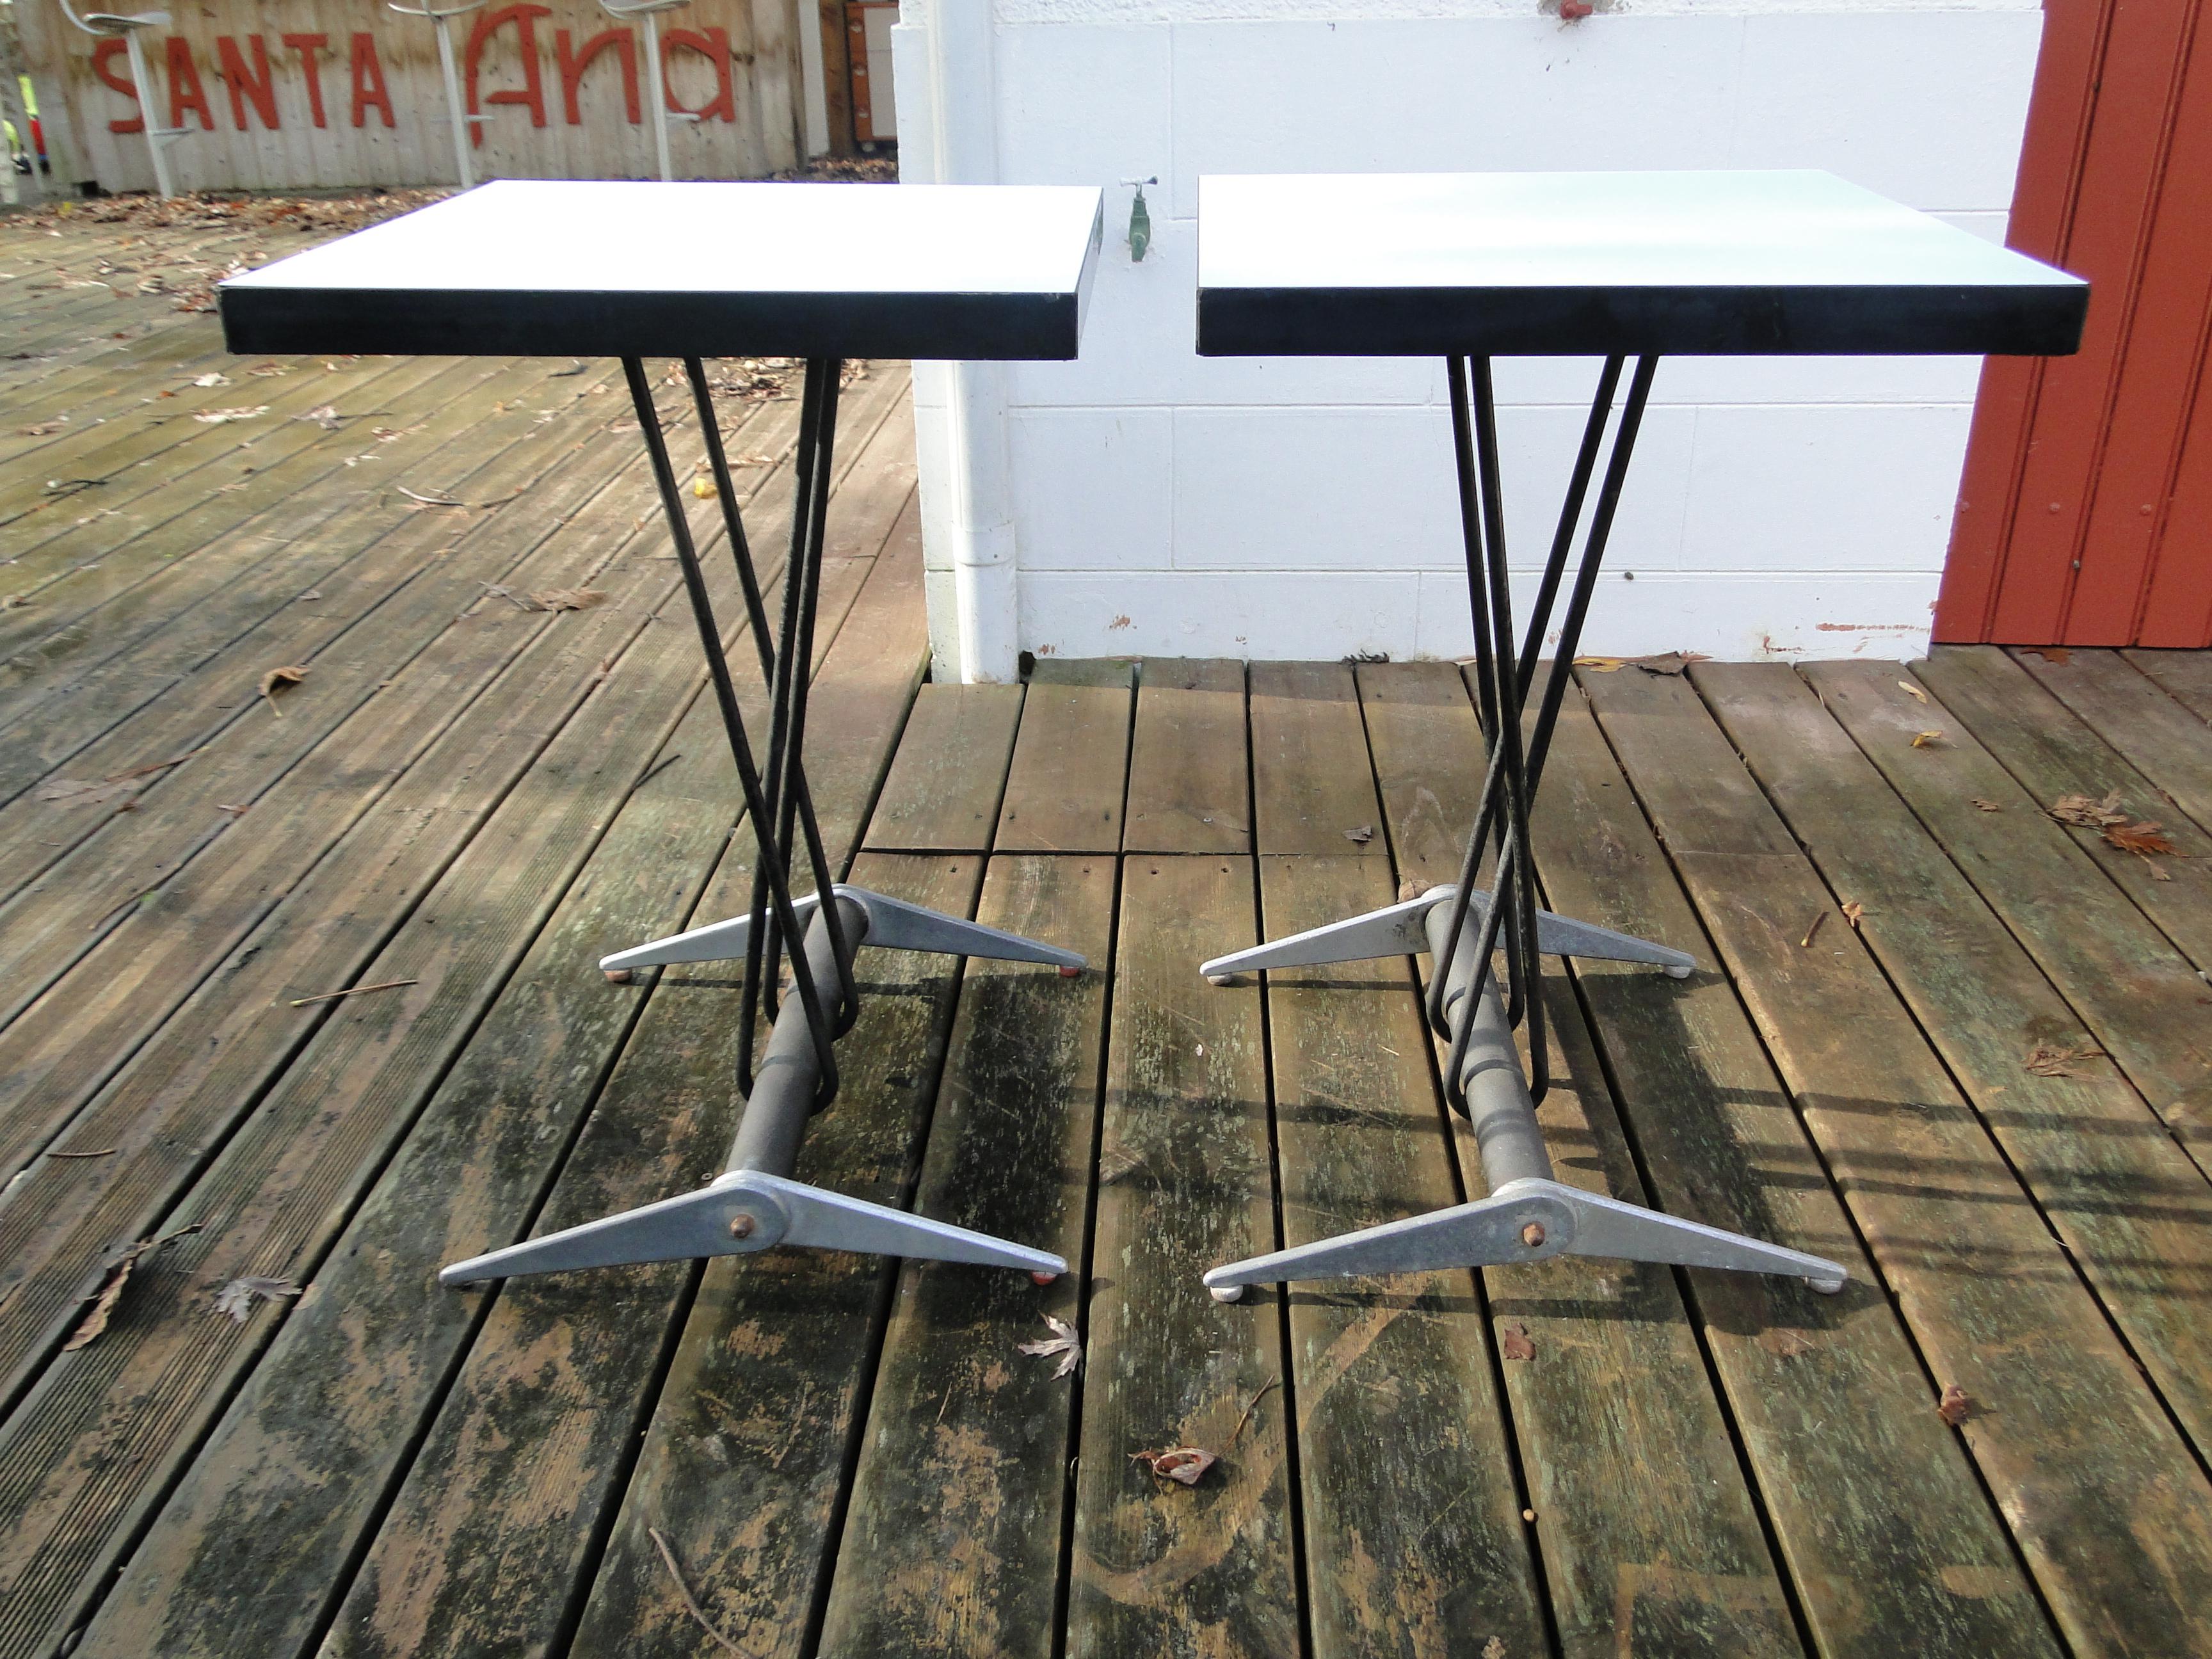 Paar Tische für den Aero-Club von Doncourt-les-
Conflans mit quadratischer Platte aus Melaminfurnier auf einem schwarz lackierten, geschwungenen Metallsockel, der auf einem doppelten Flügelsockel aus Aluminium ruht


Bibliographie für die